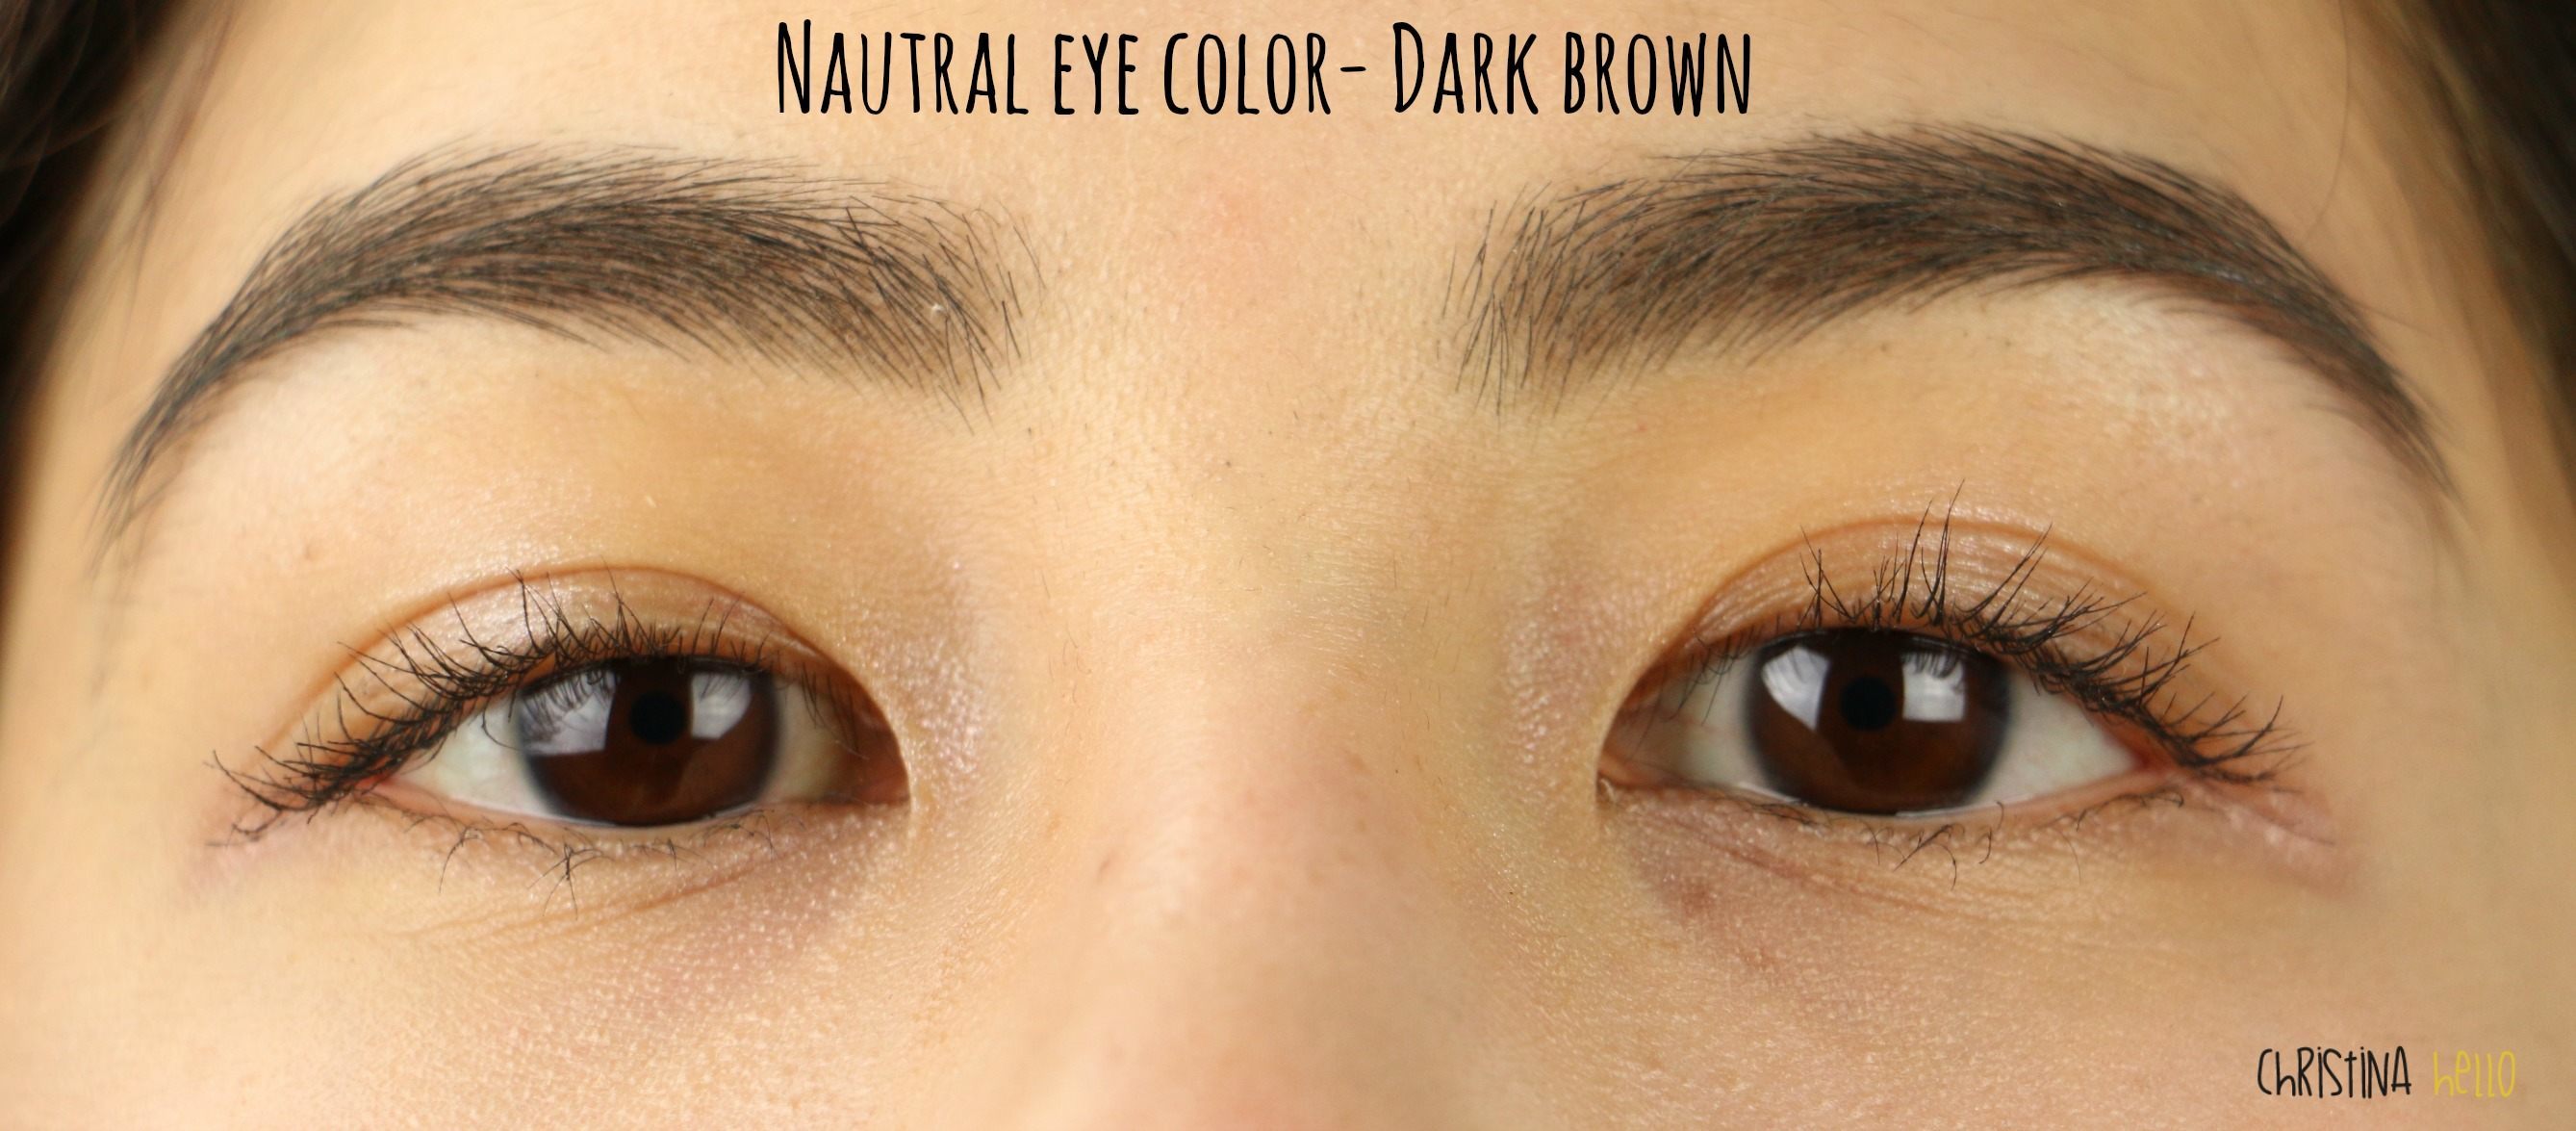 freshlook colorblends brown on black eyes